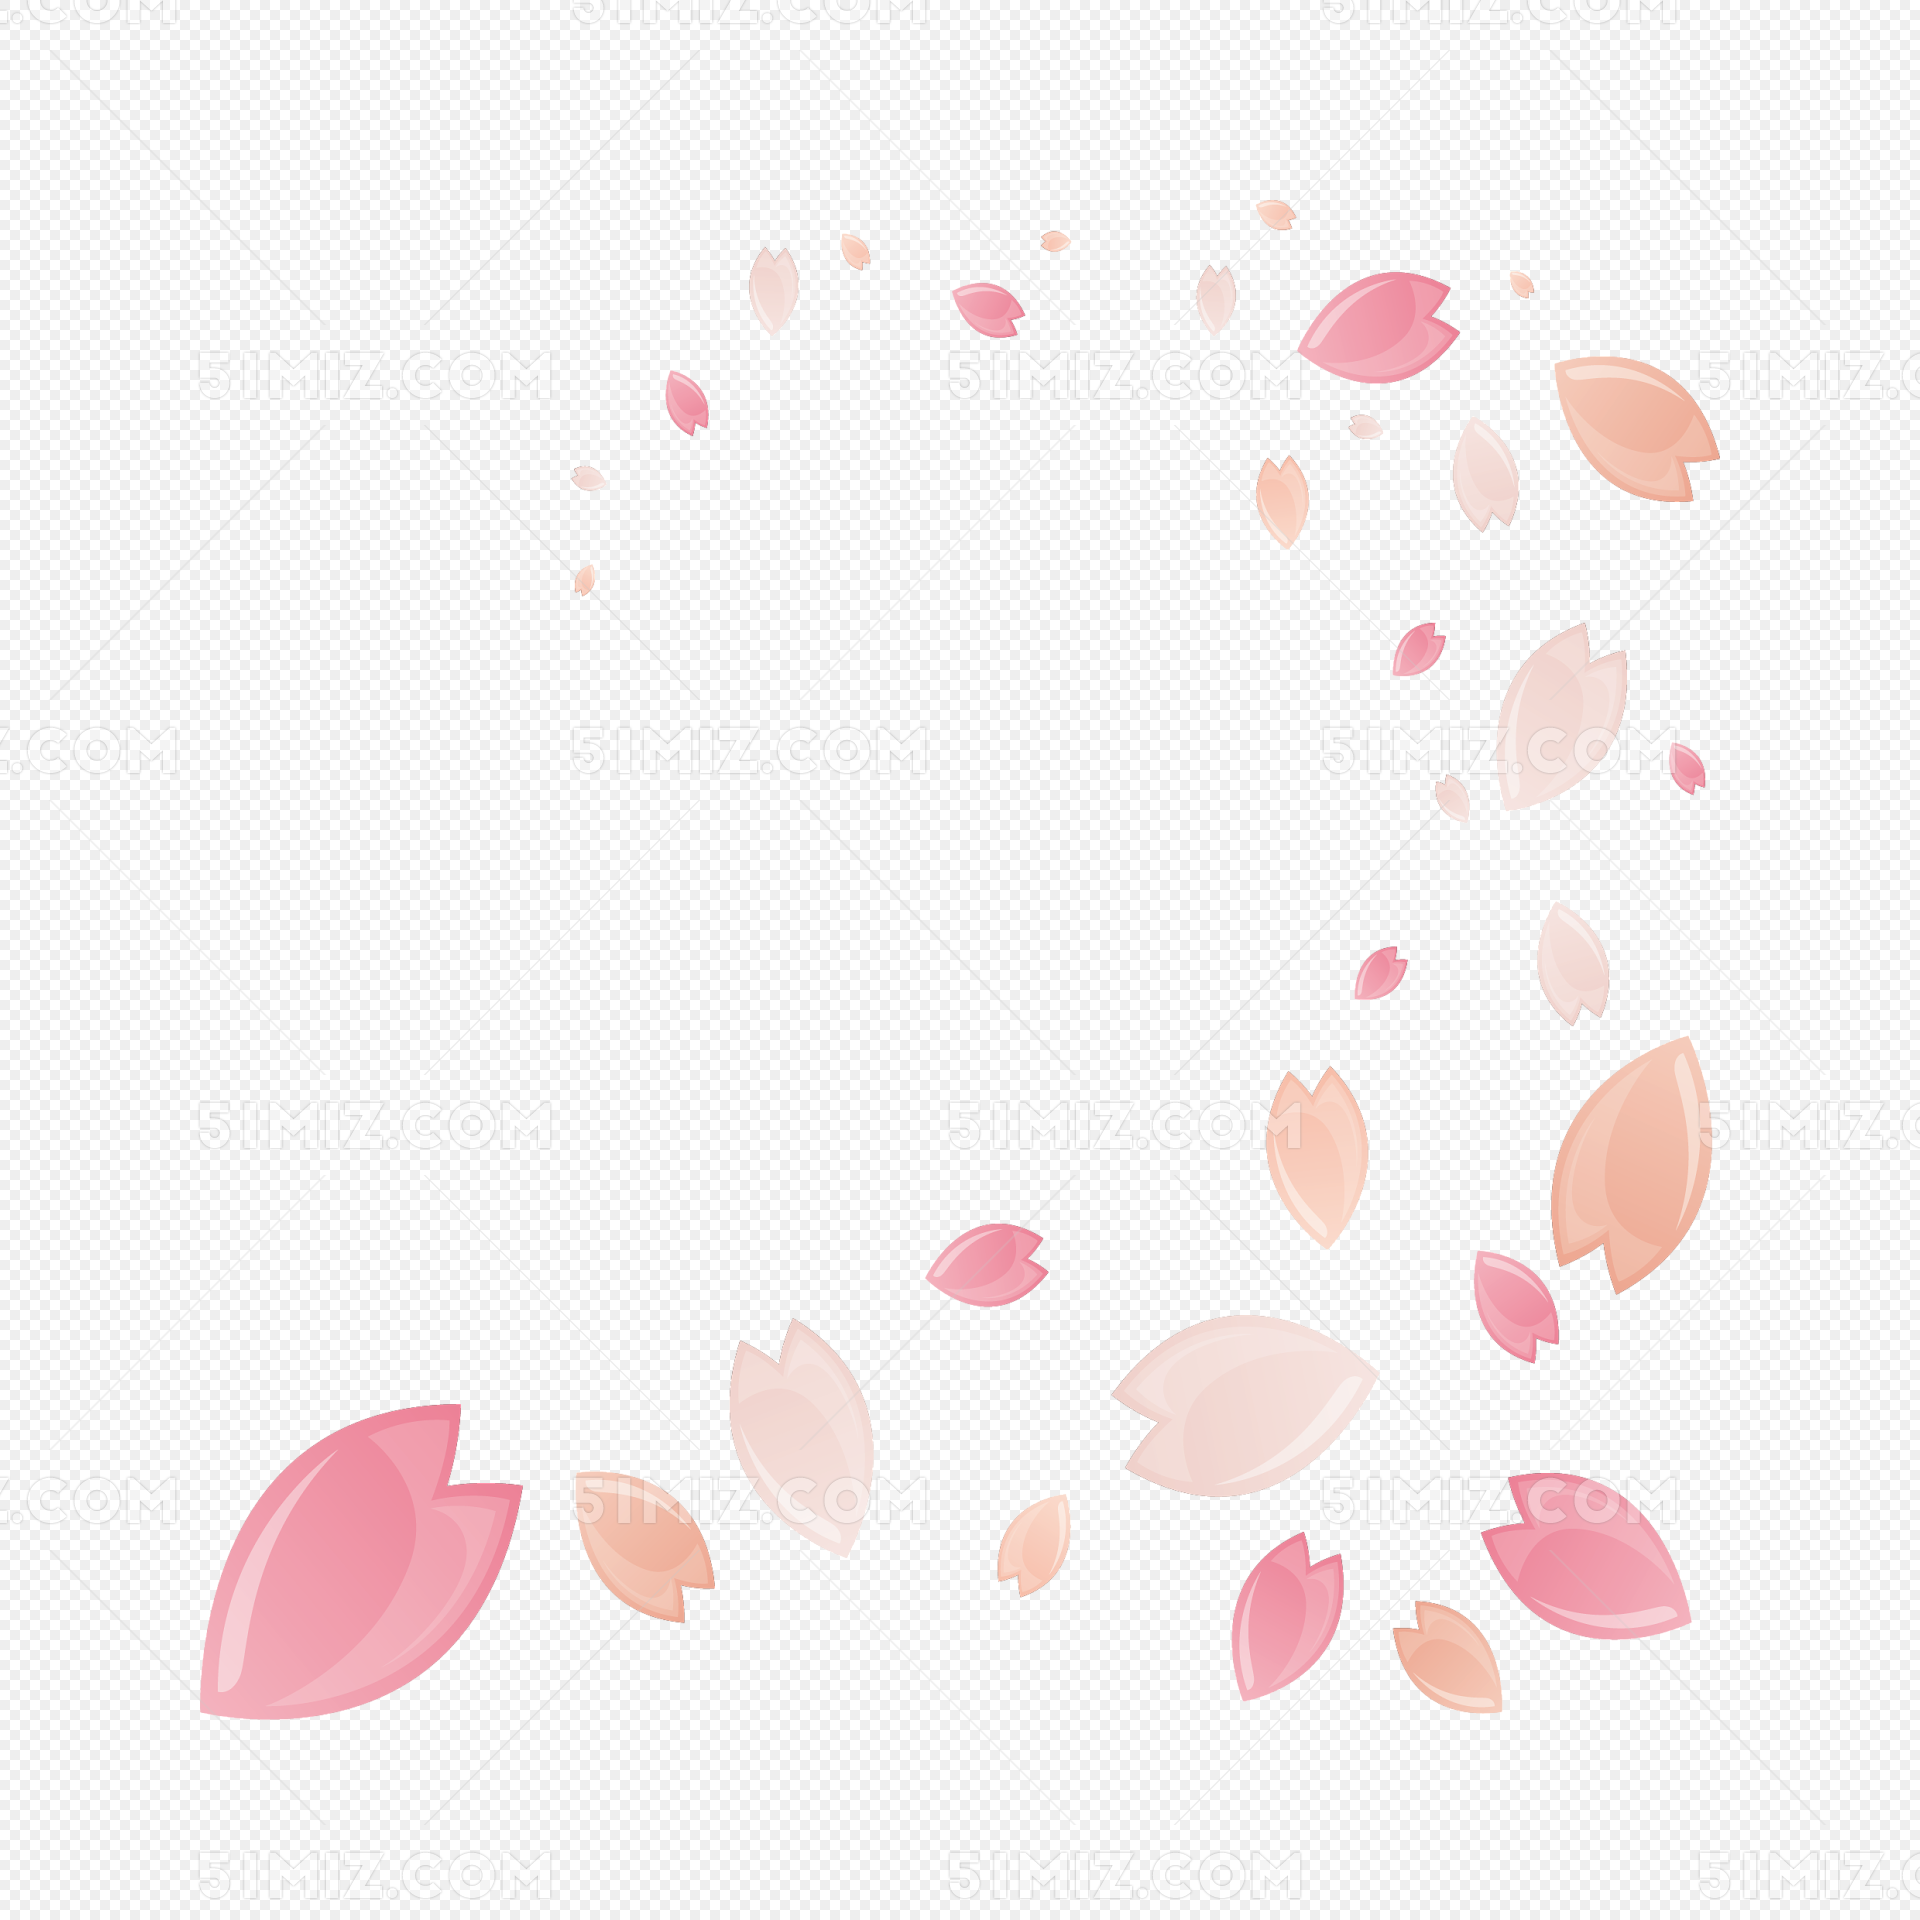 粉玫瑰花瓣背景图片-粉玫瑰花瓣背景素材图片-千库网